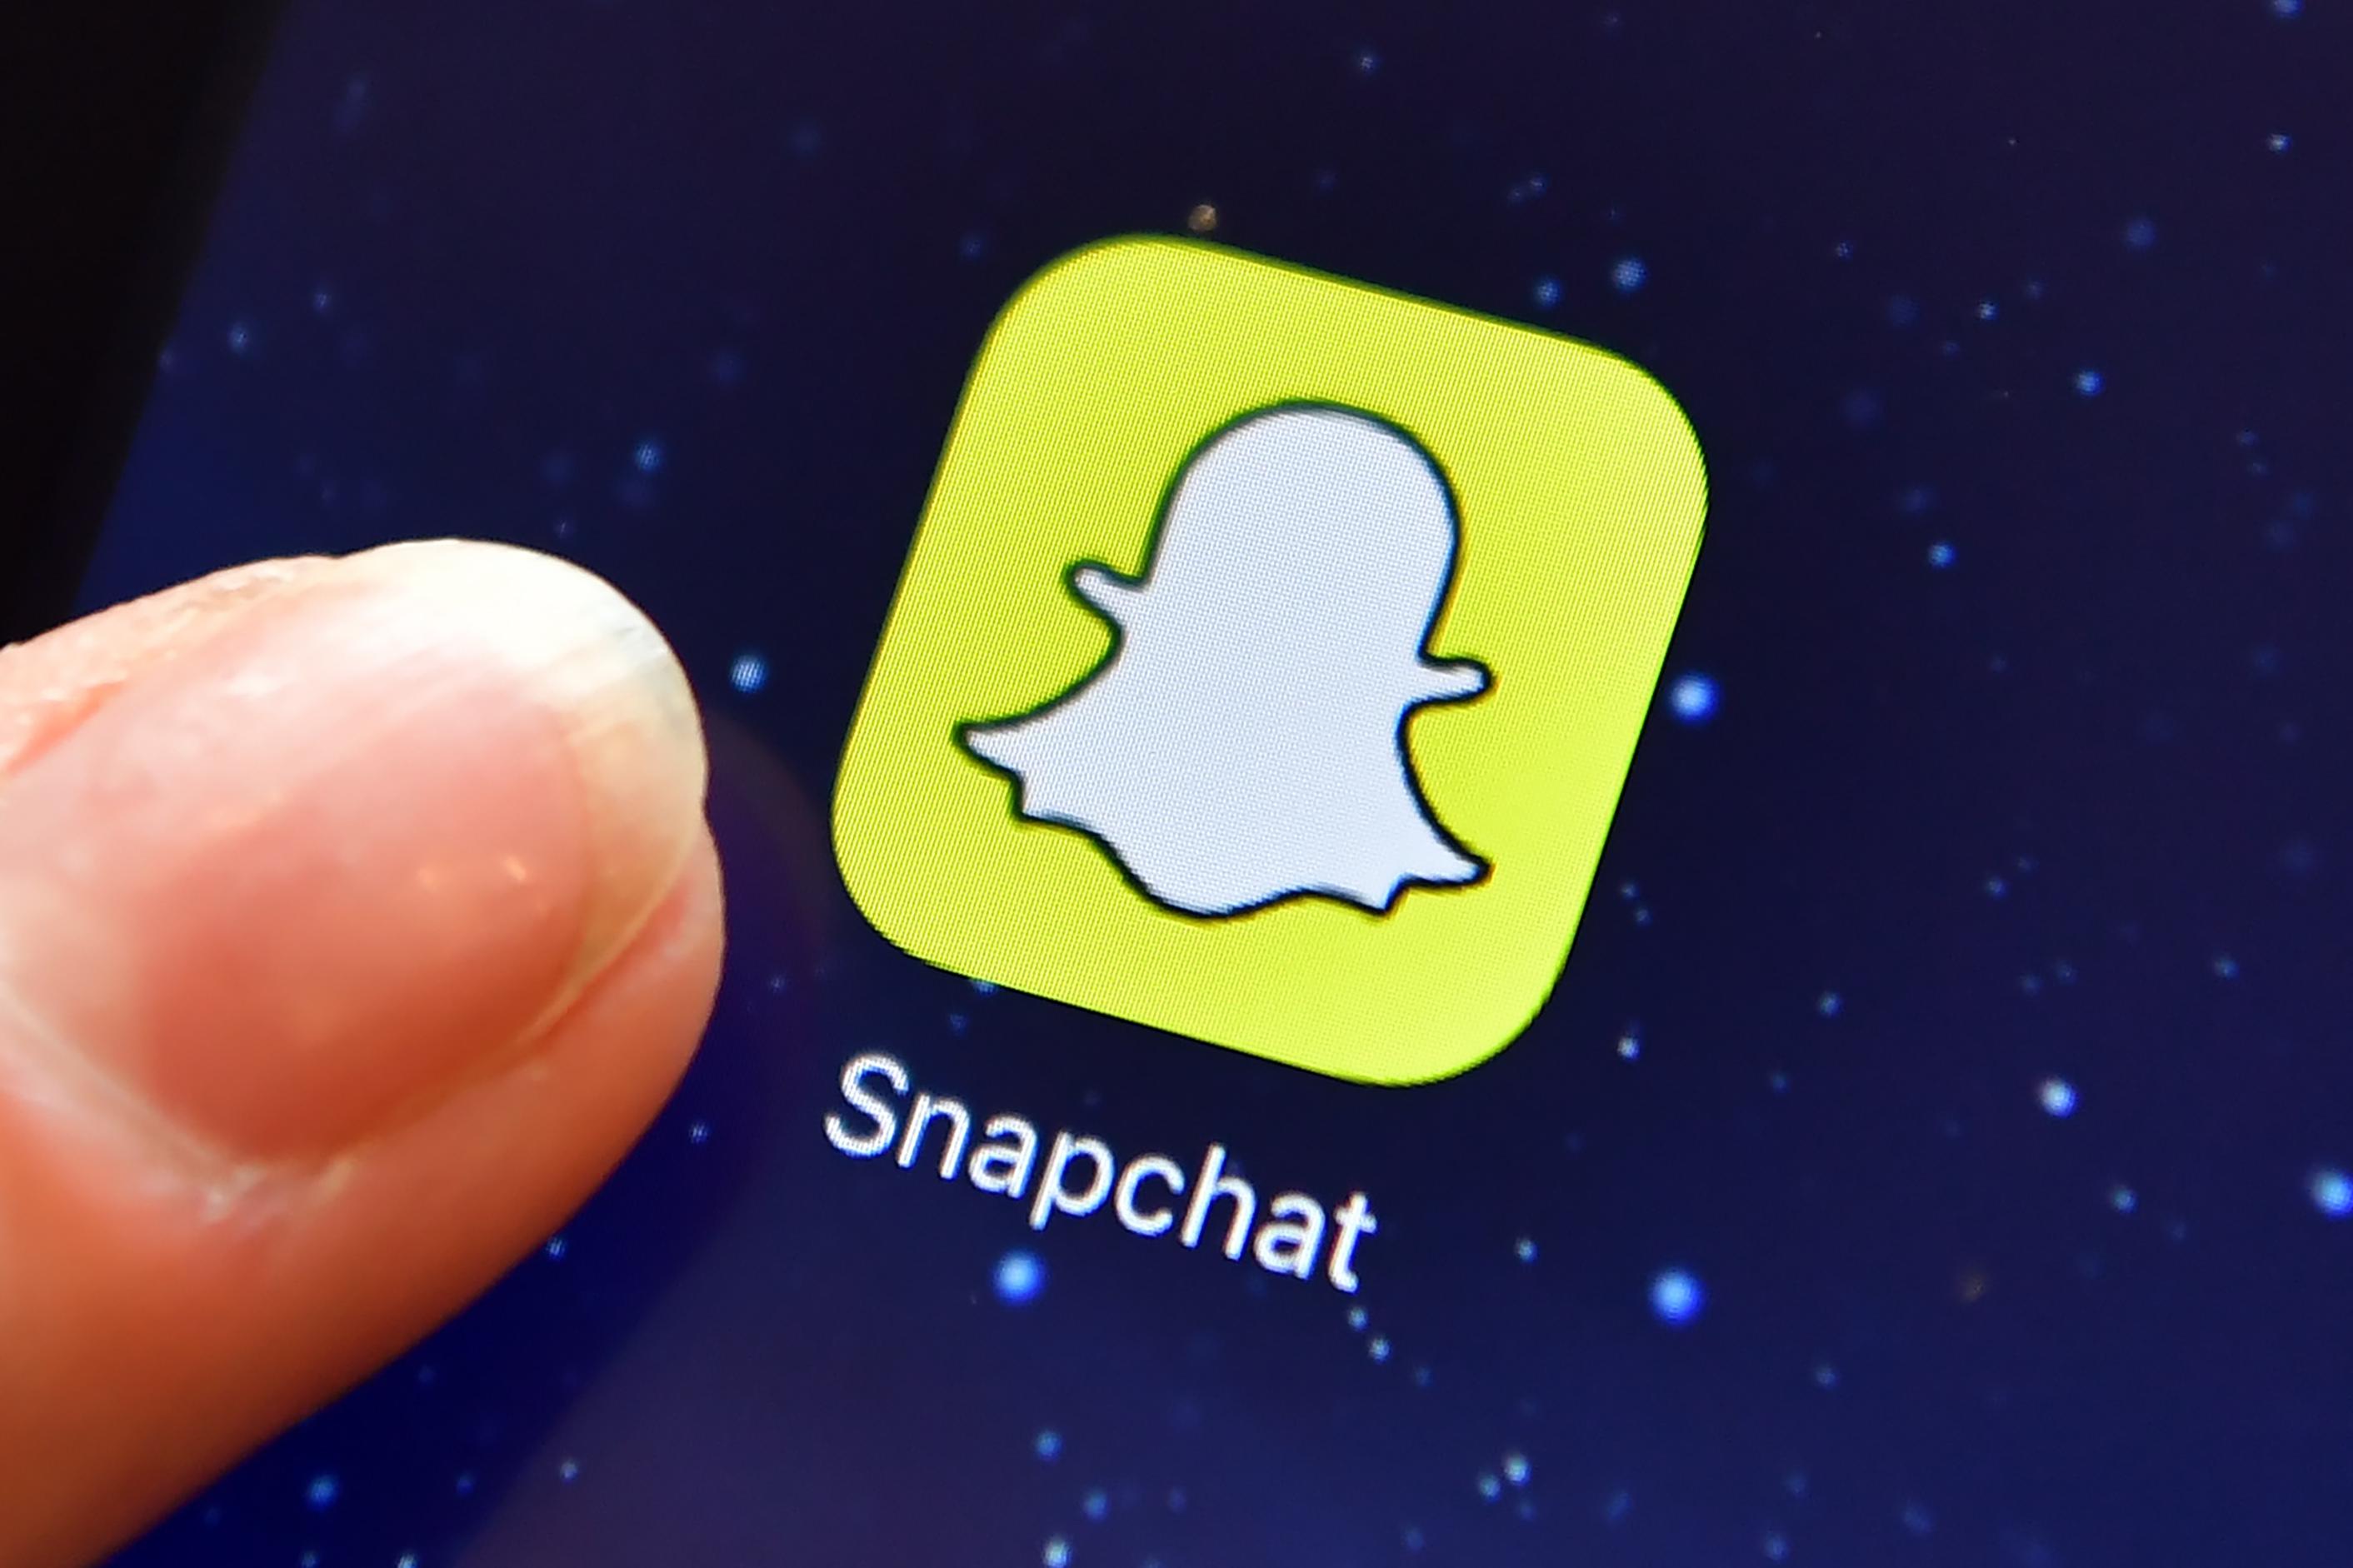 Snapchat names hookup Snapchat Hookup